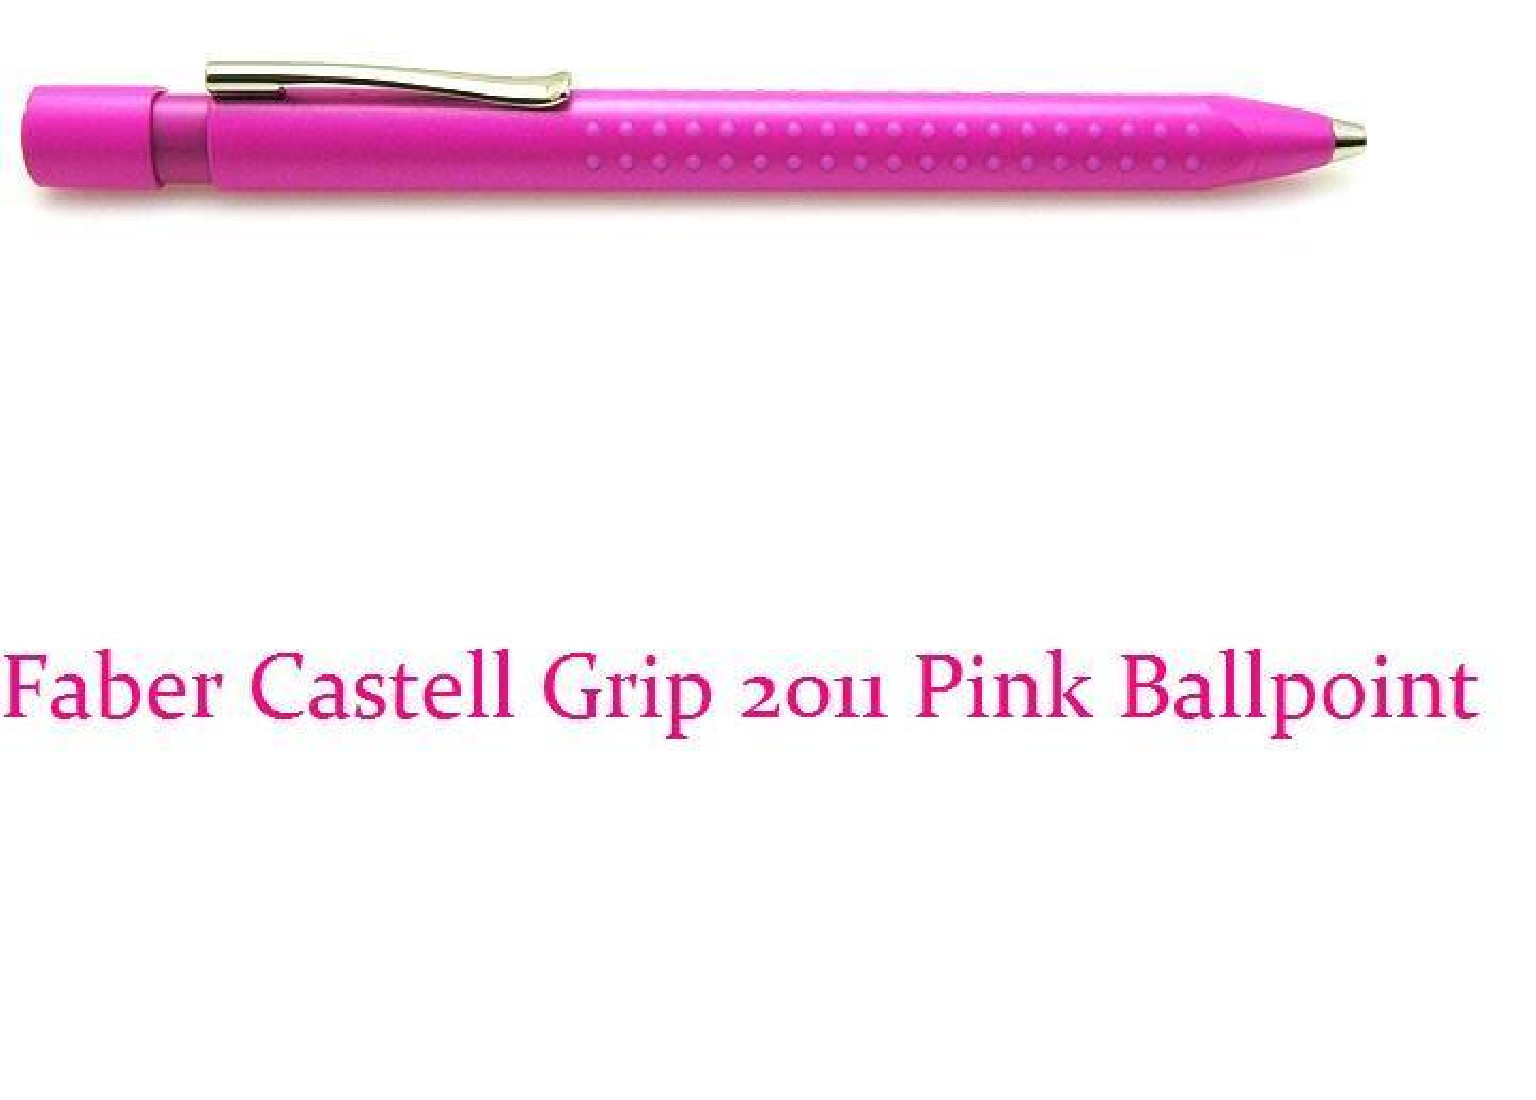 Faber Castell 2011 Pink Grip Ballpoint